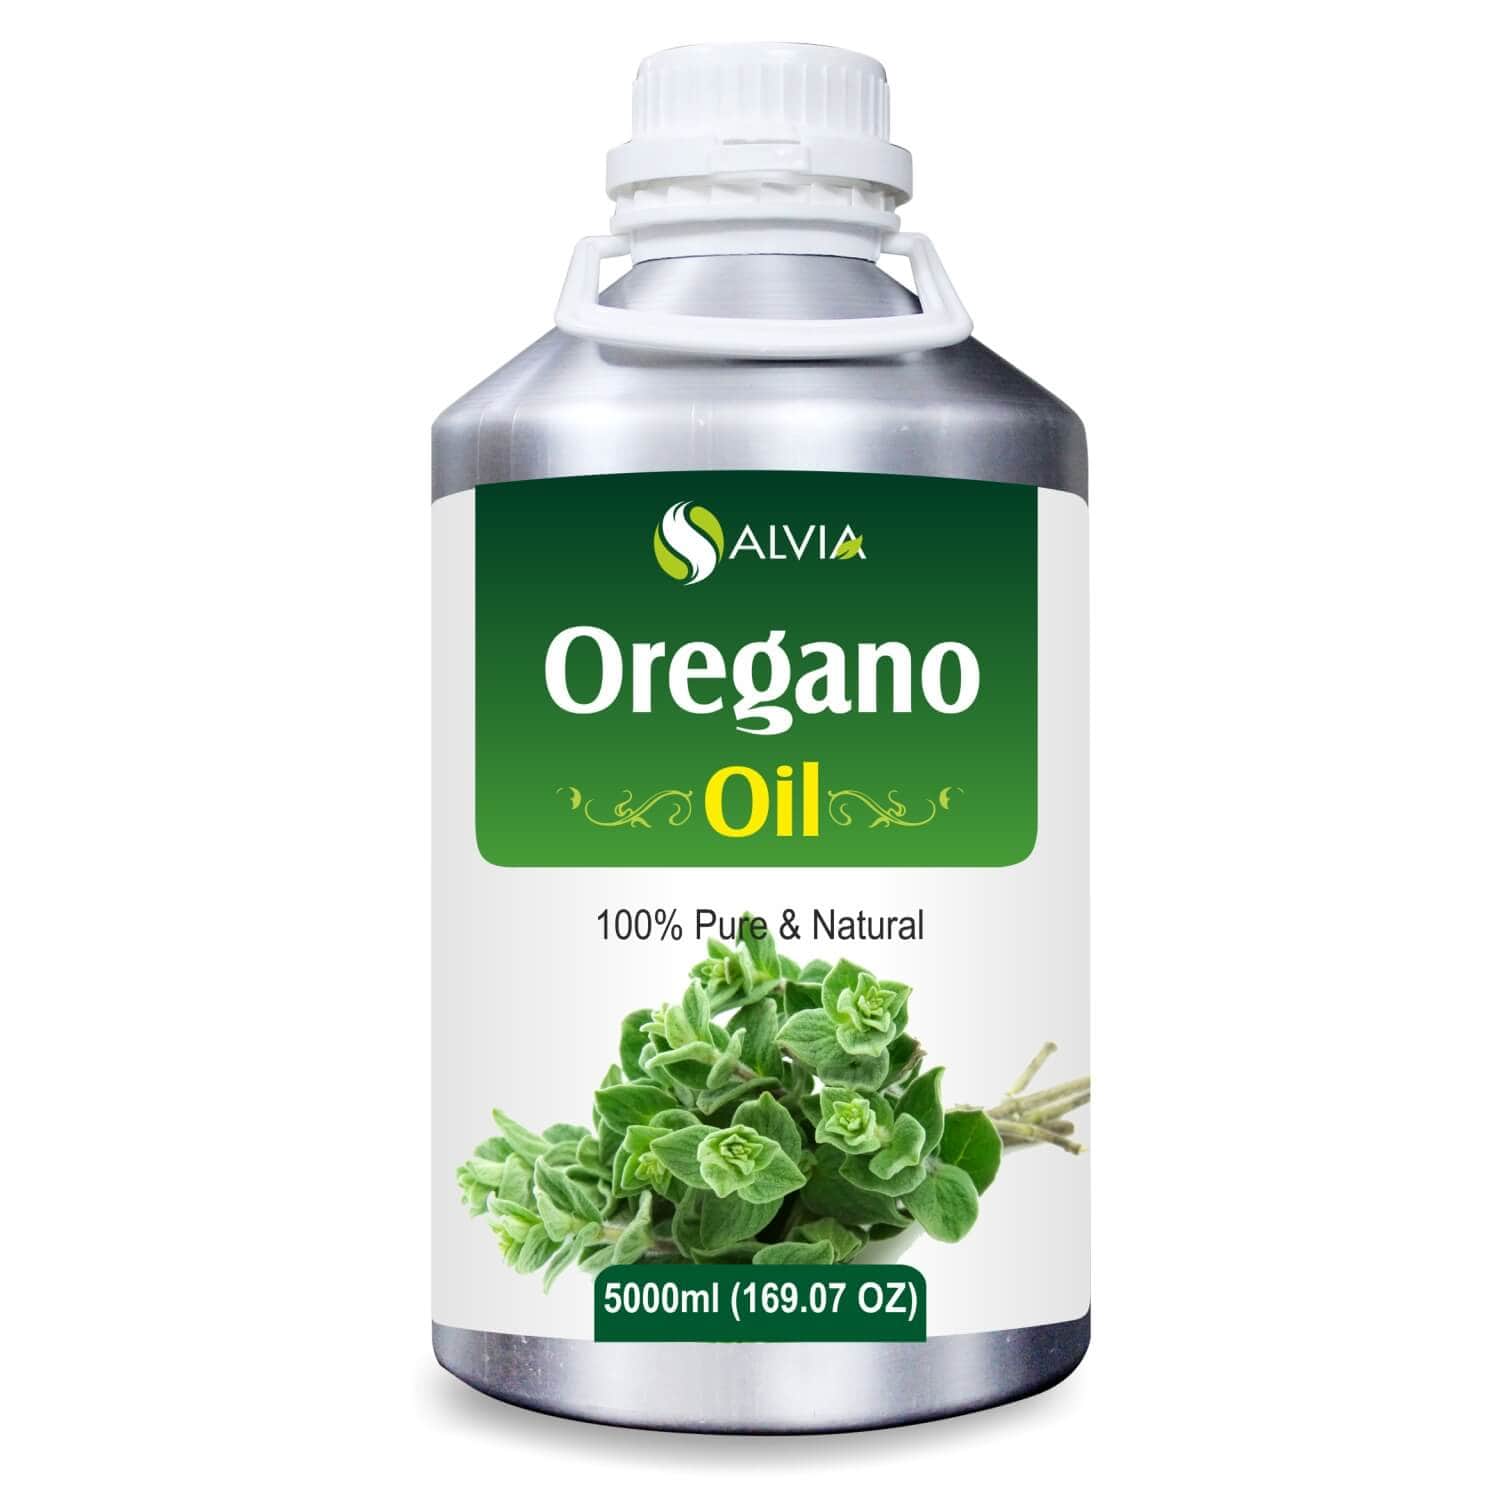 Salvia Natural Essential Oils 5000ml Oregano Essential Oil (Origanum Vulgare) 100% Pure, Undiluted, Natural For Aromatherapy